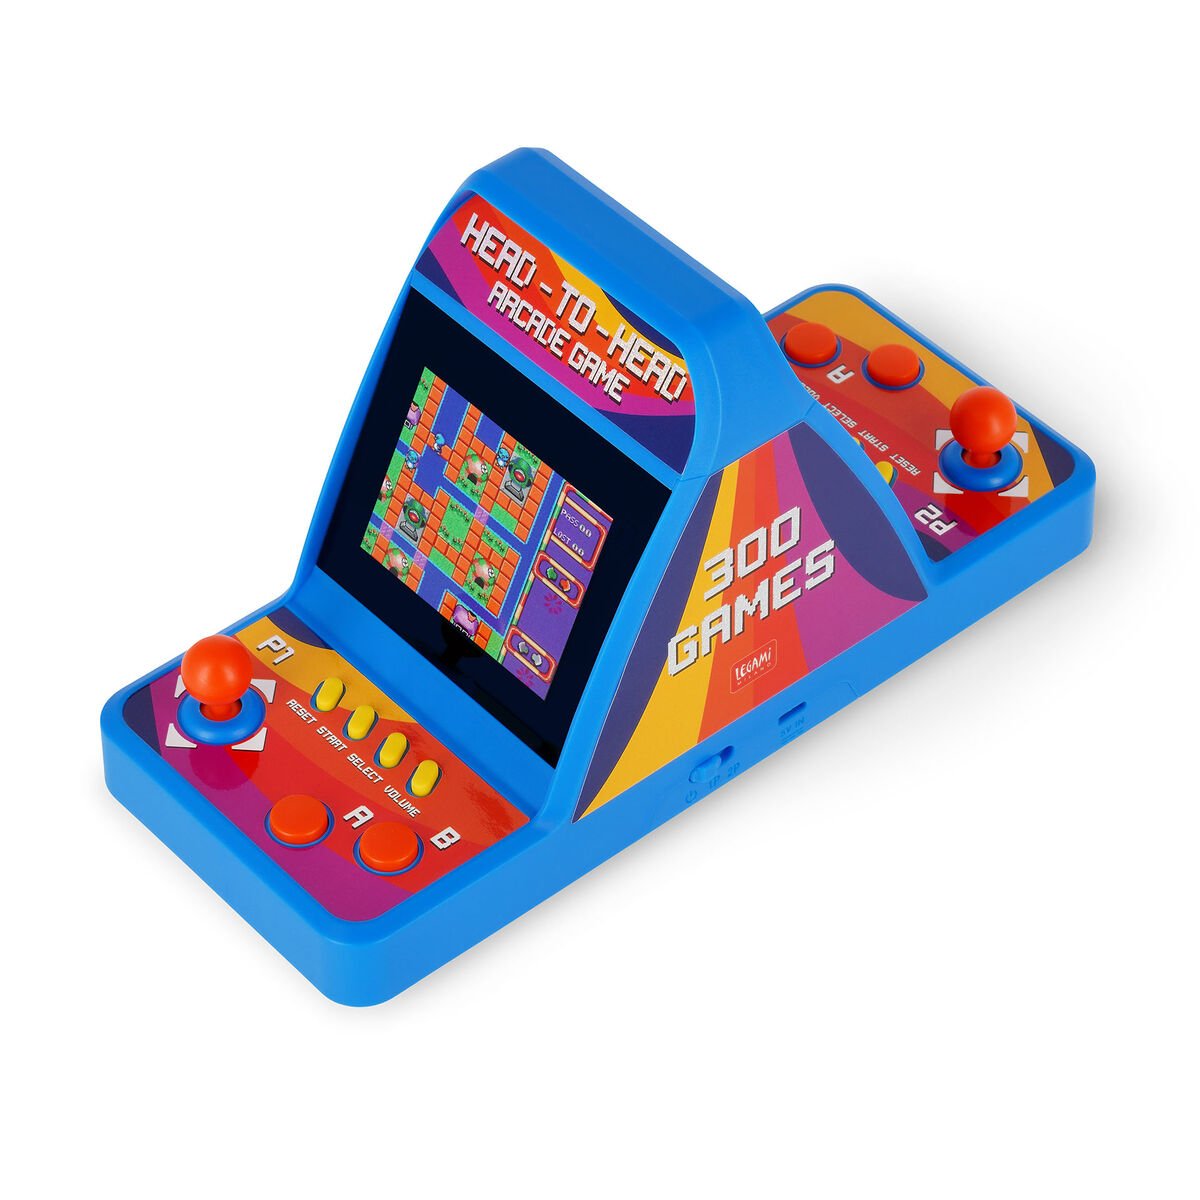 Mini Videogioco Arcade a due Giocatori, , zoo